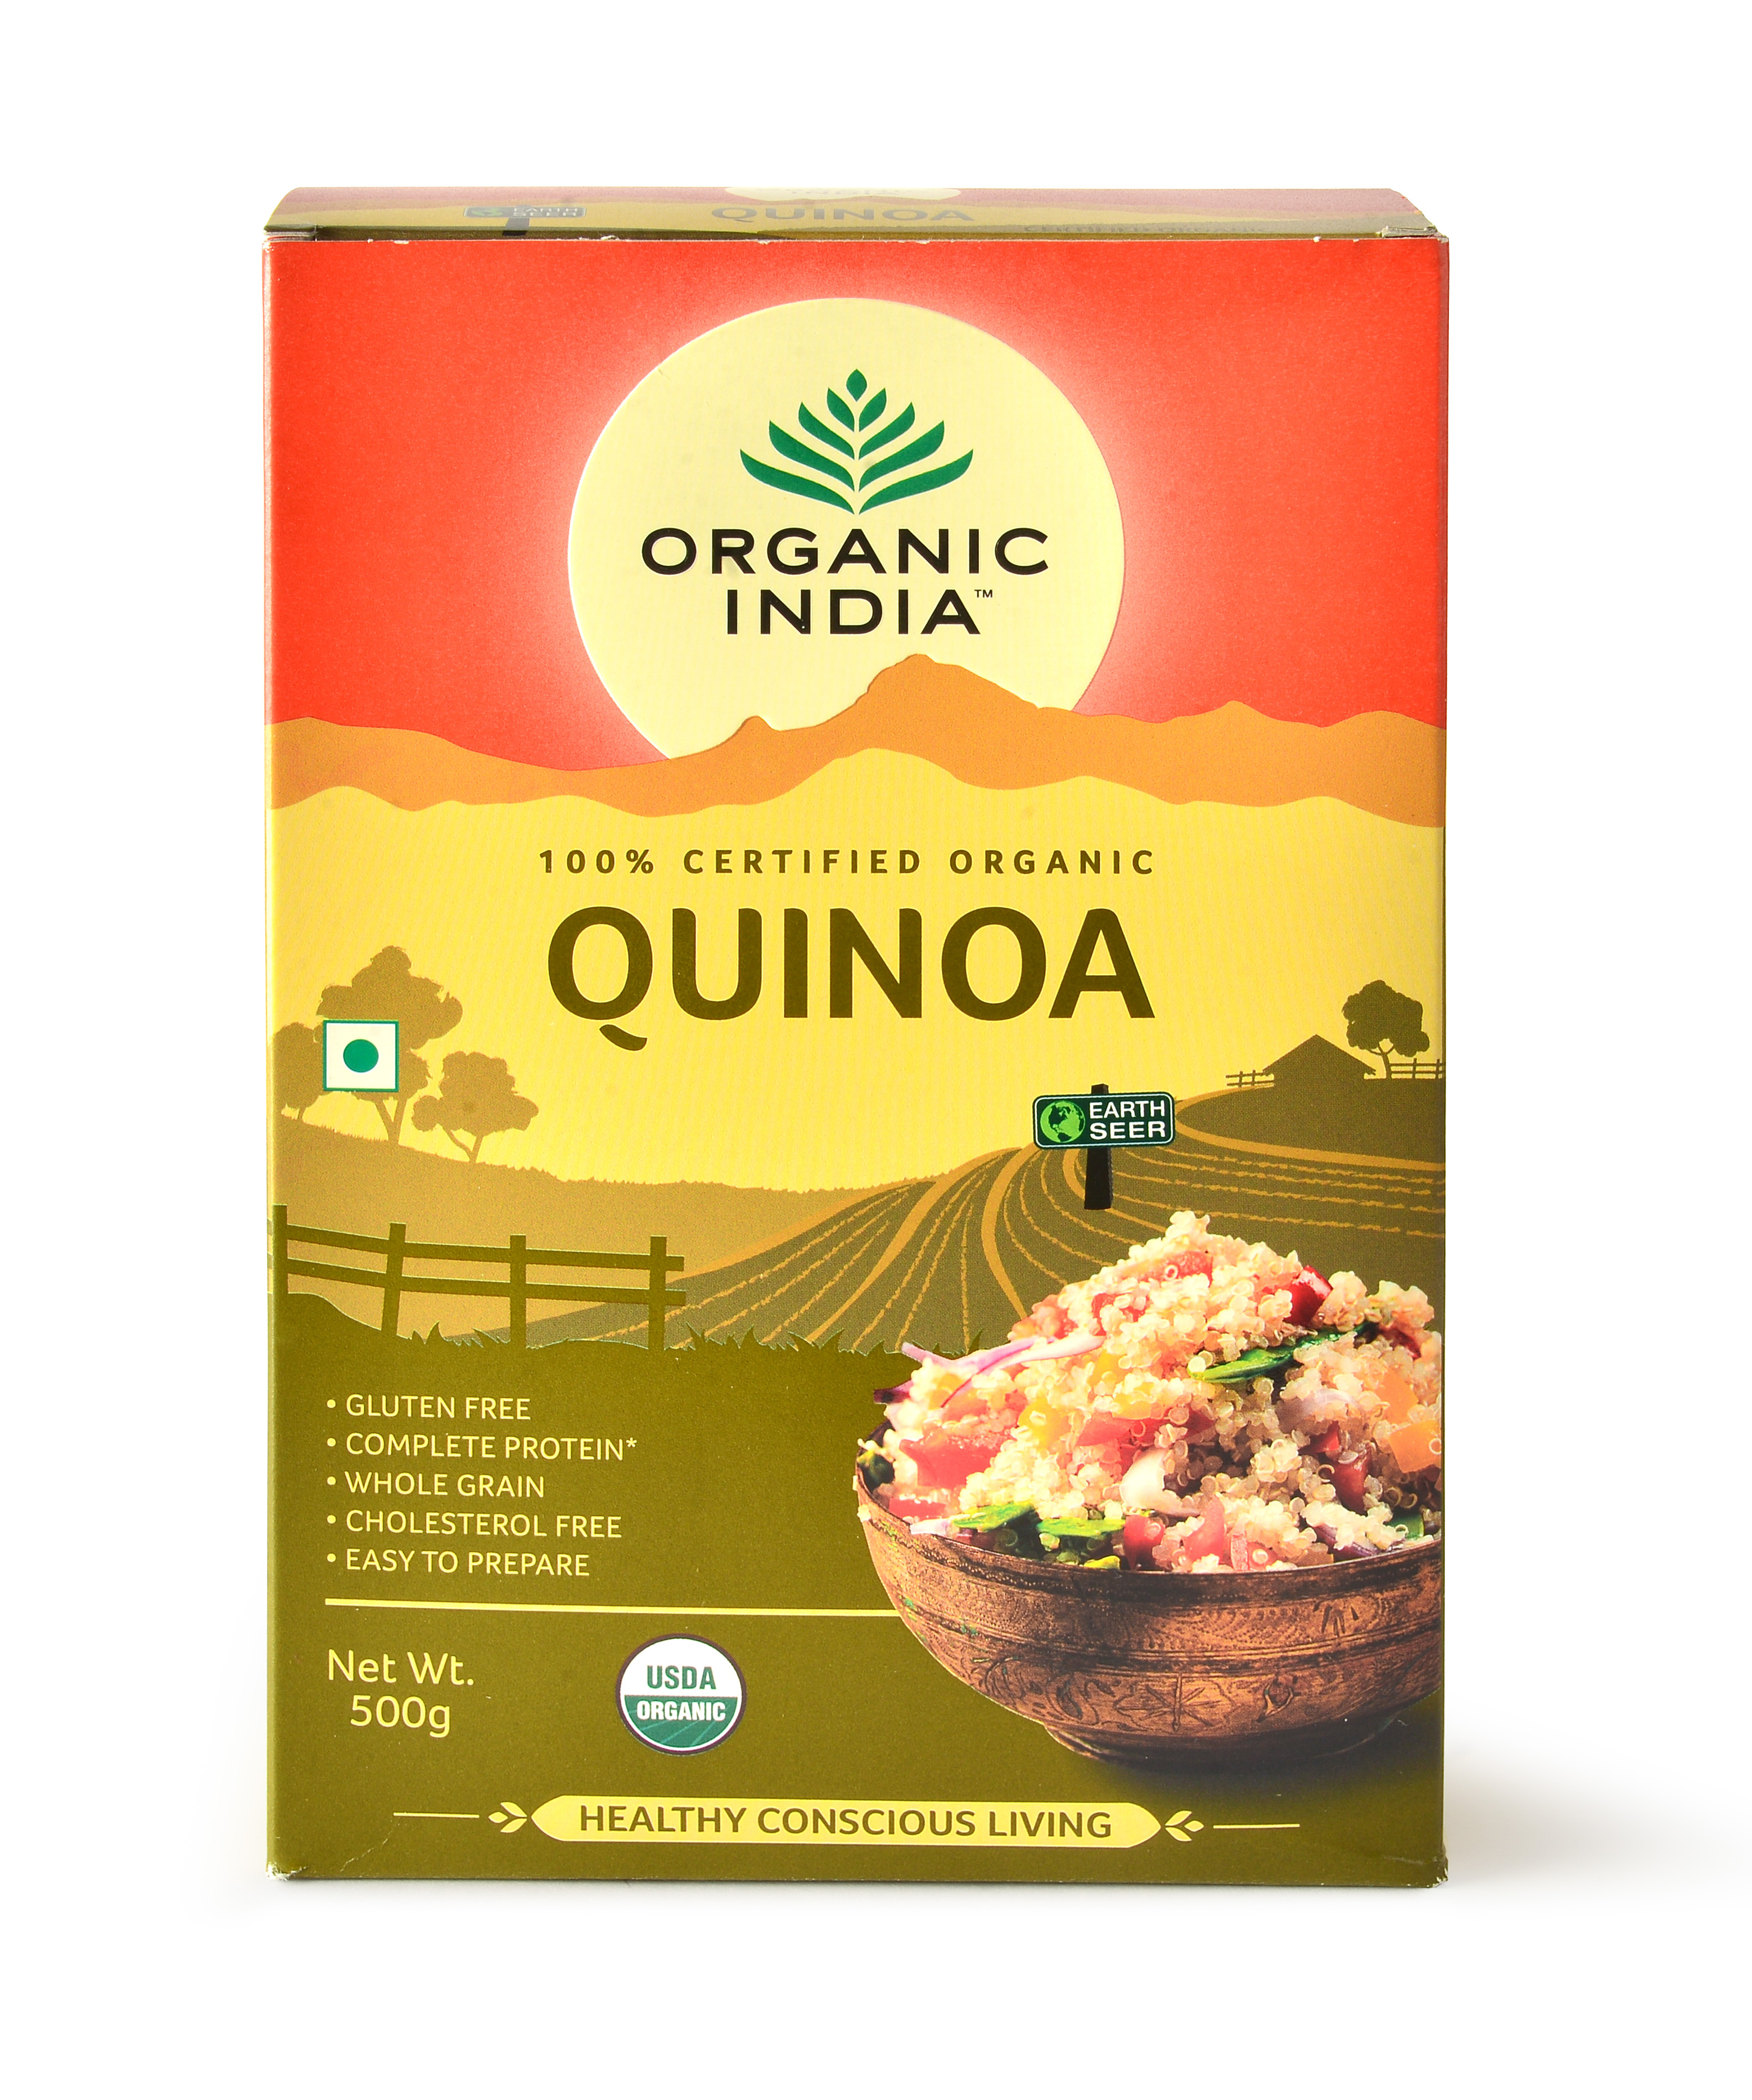 Buy Organic India Quinoa at Best Price Online